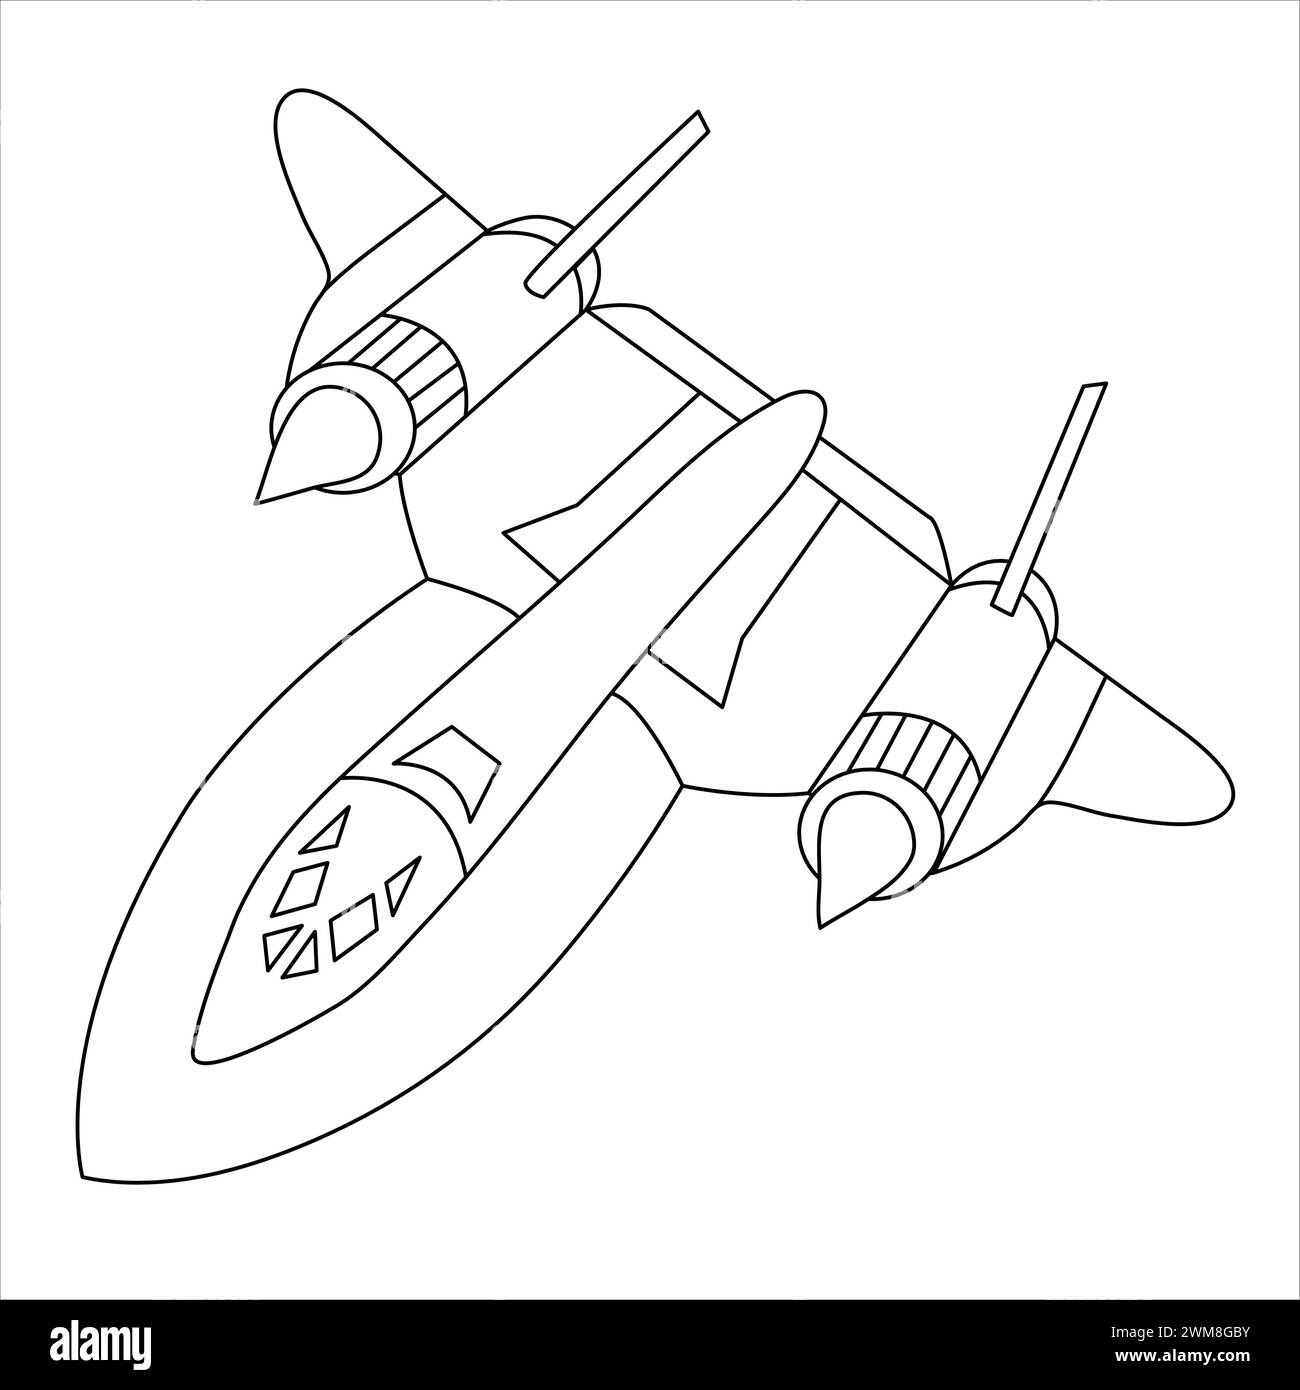 Avion militaire Lockheed SR-71 Blackbird Coloring Book pour adultes et enfants. Avion de dessin animé isolé sur fond blanc. Dessin de chasseur Jet Illustration de Vecteur